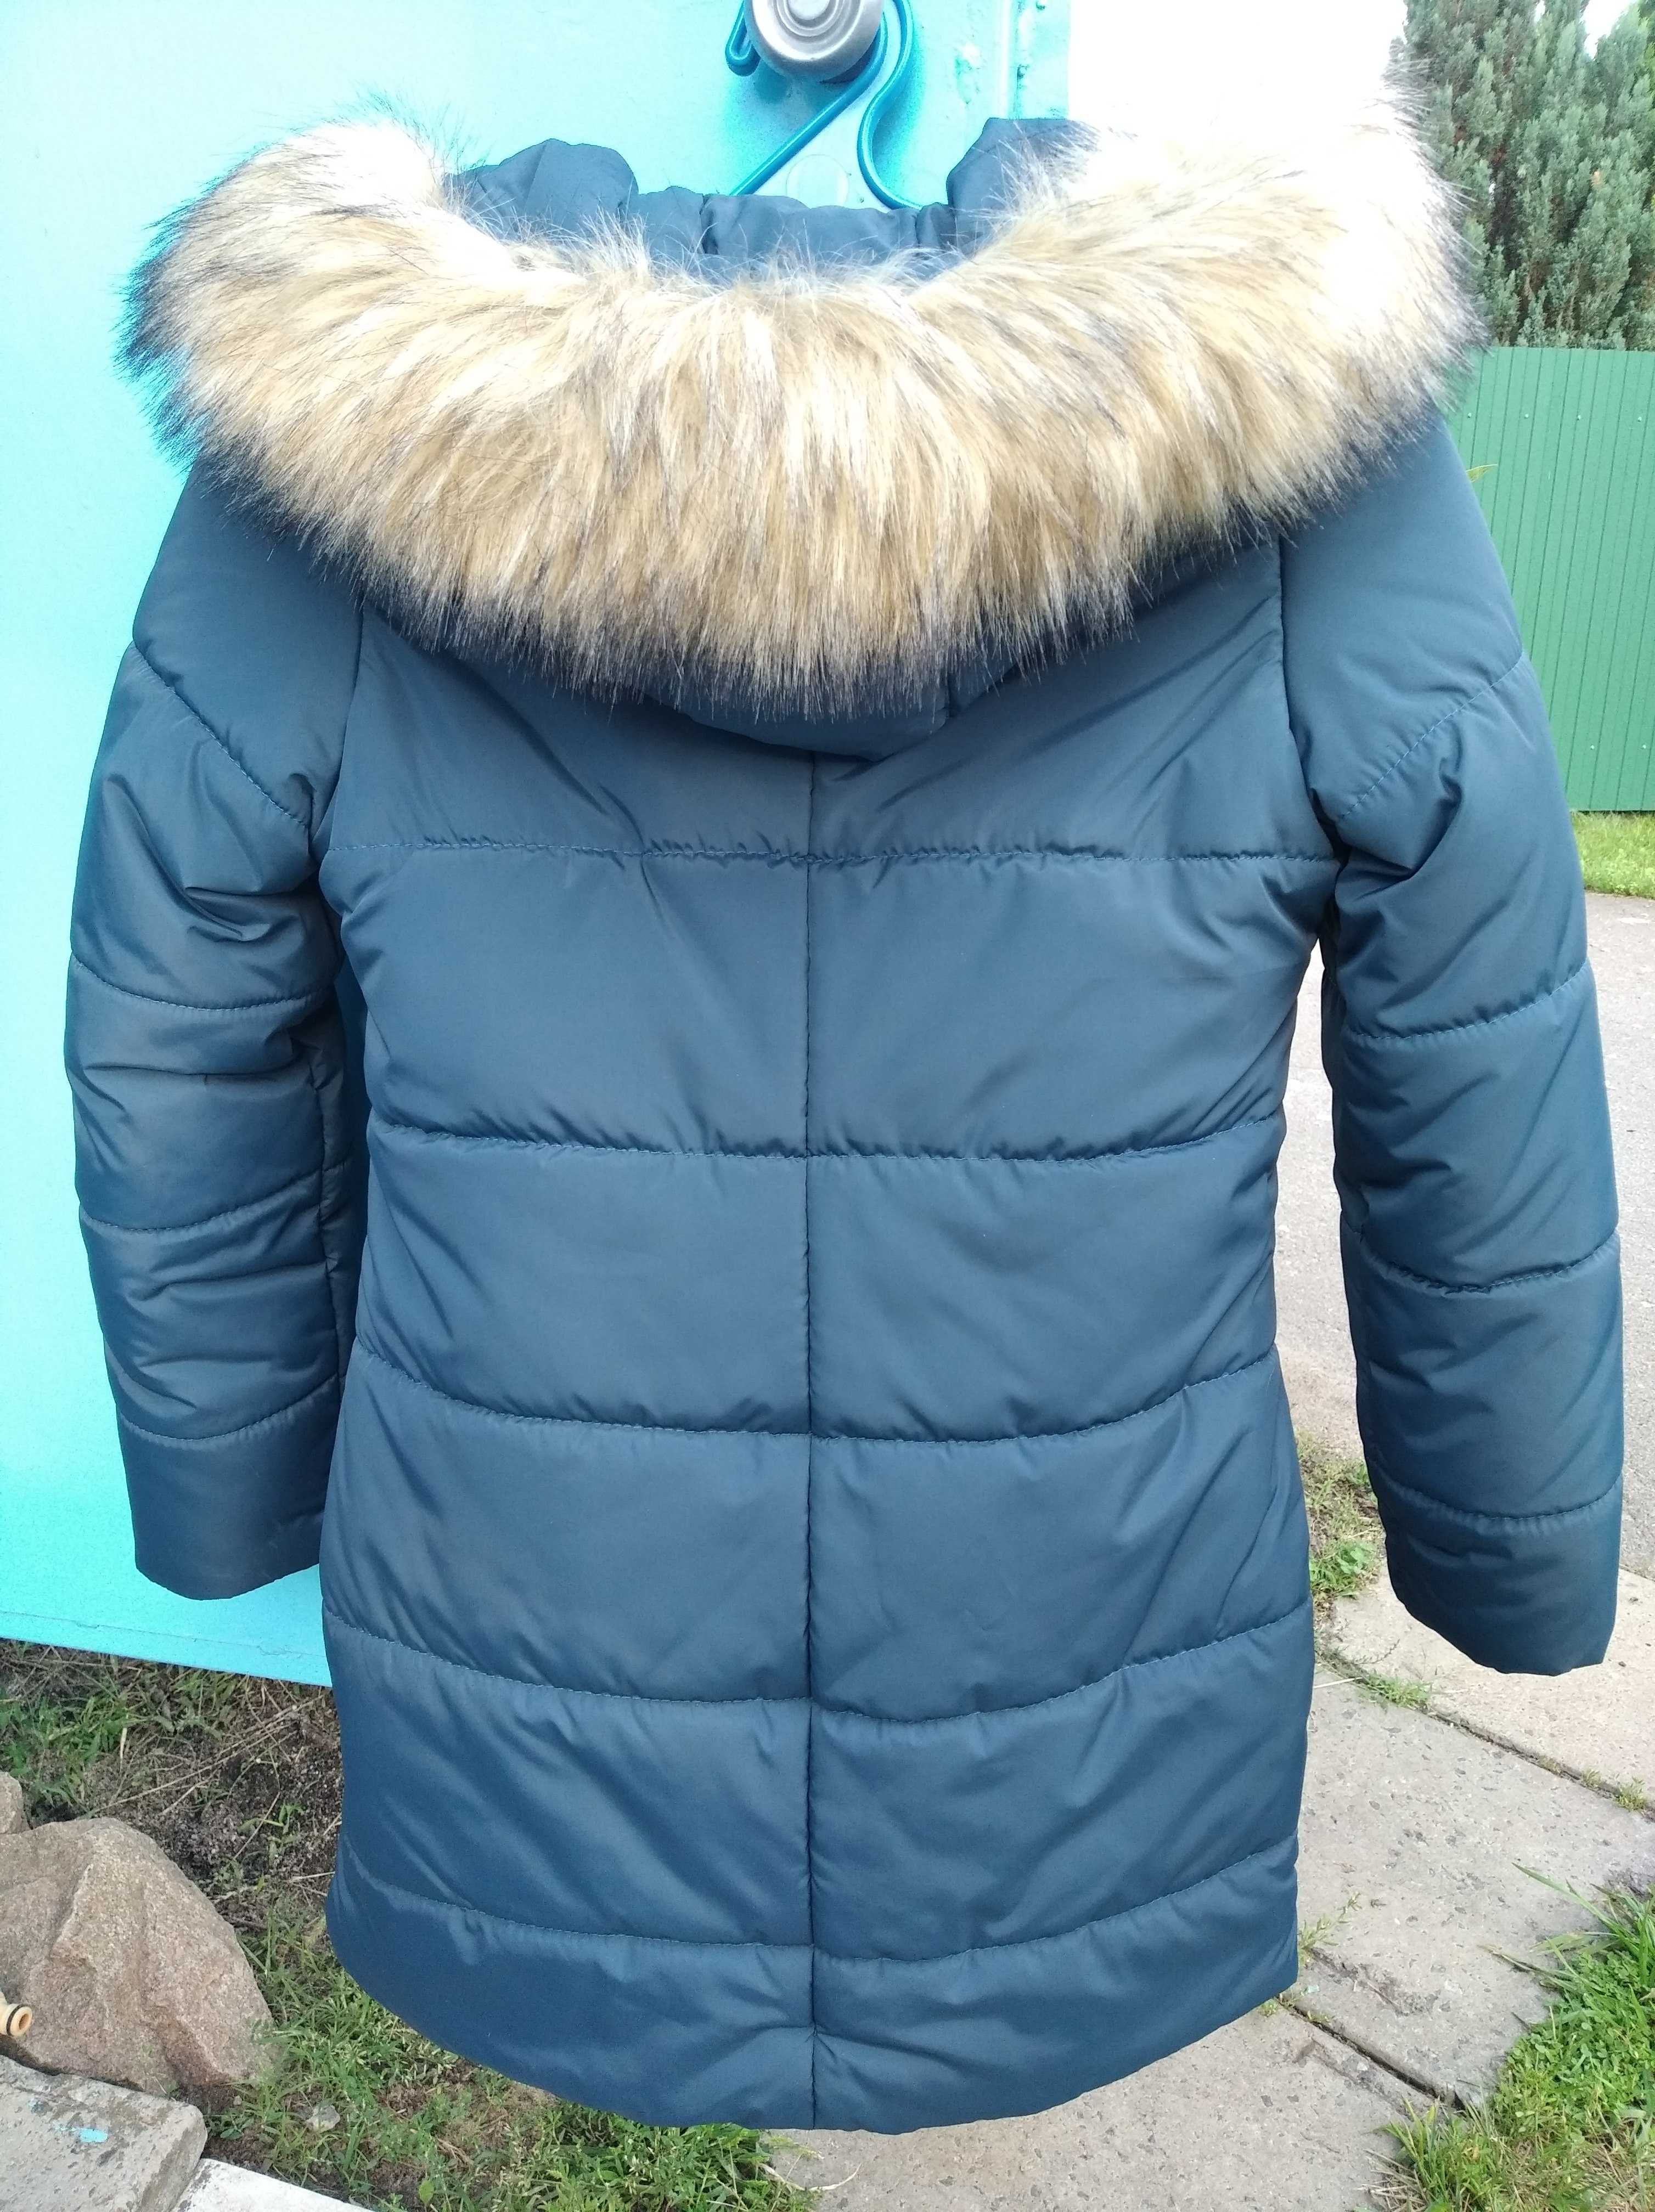 Зимняя куртка, пальто на девочку подростка